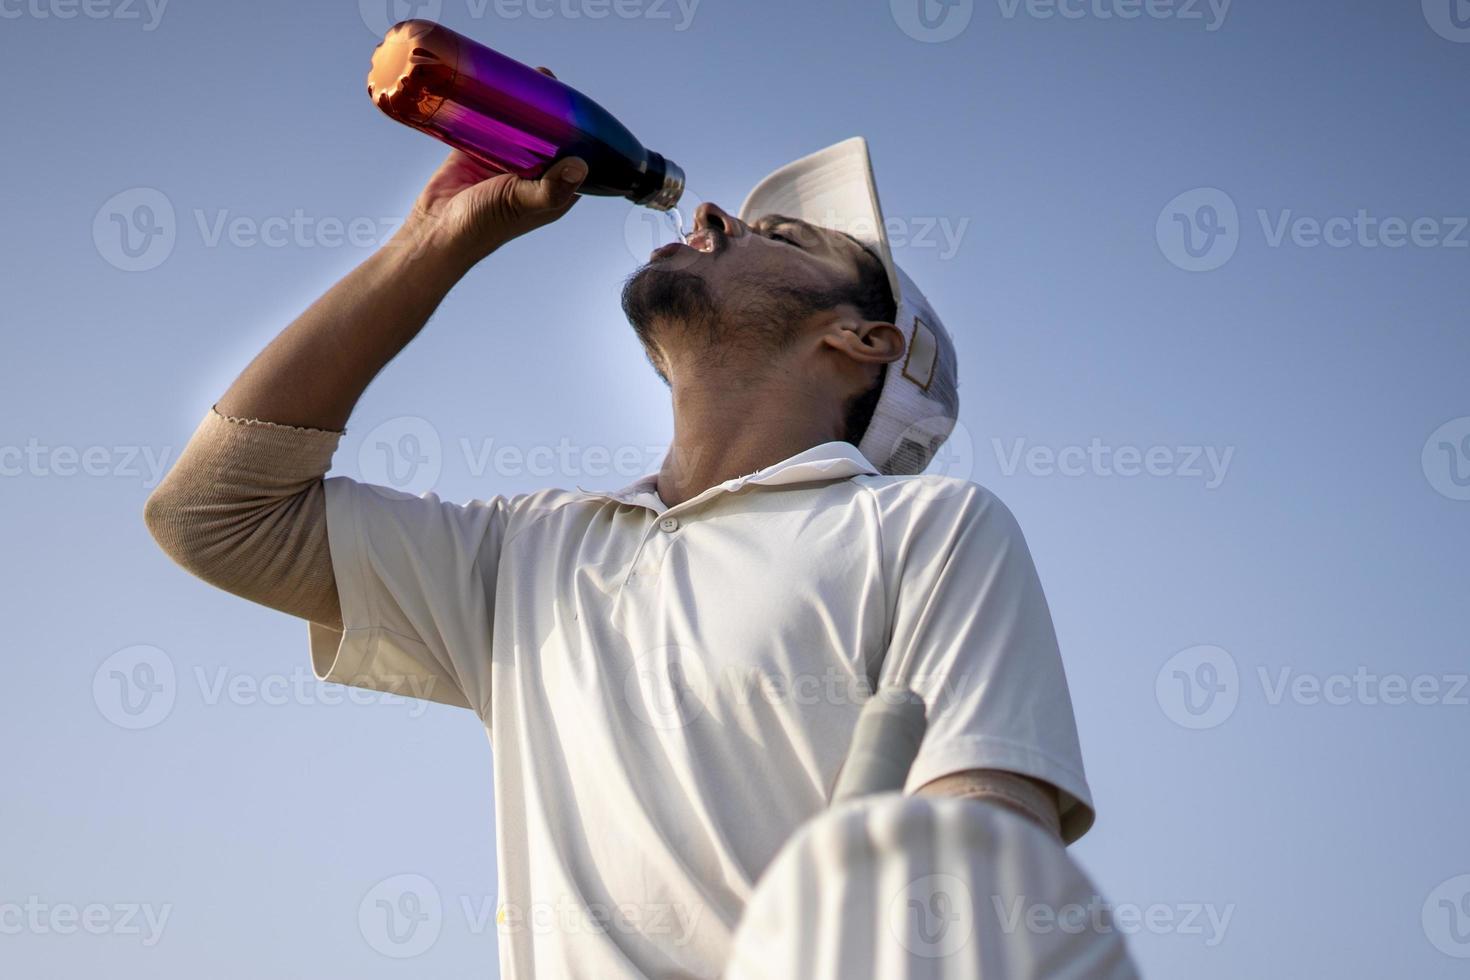 jugadores de críquet indios con vestido blanco de partidos de prueba bebiendo agua de una botella en el campo de críquet. foto